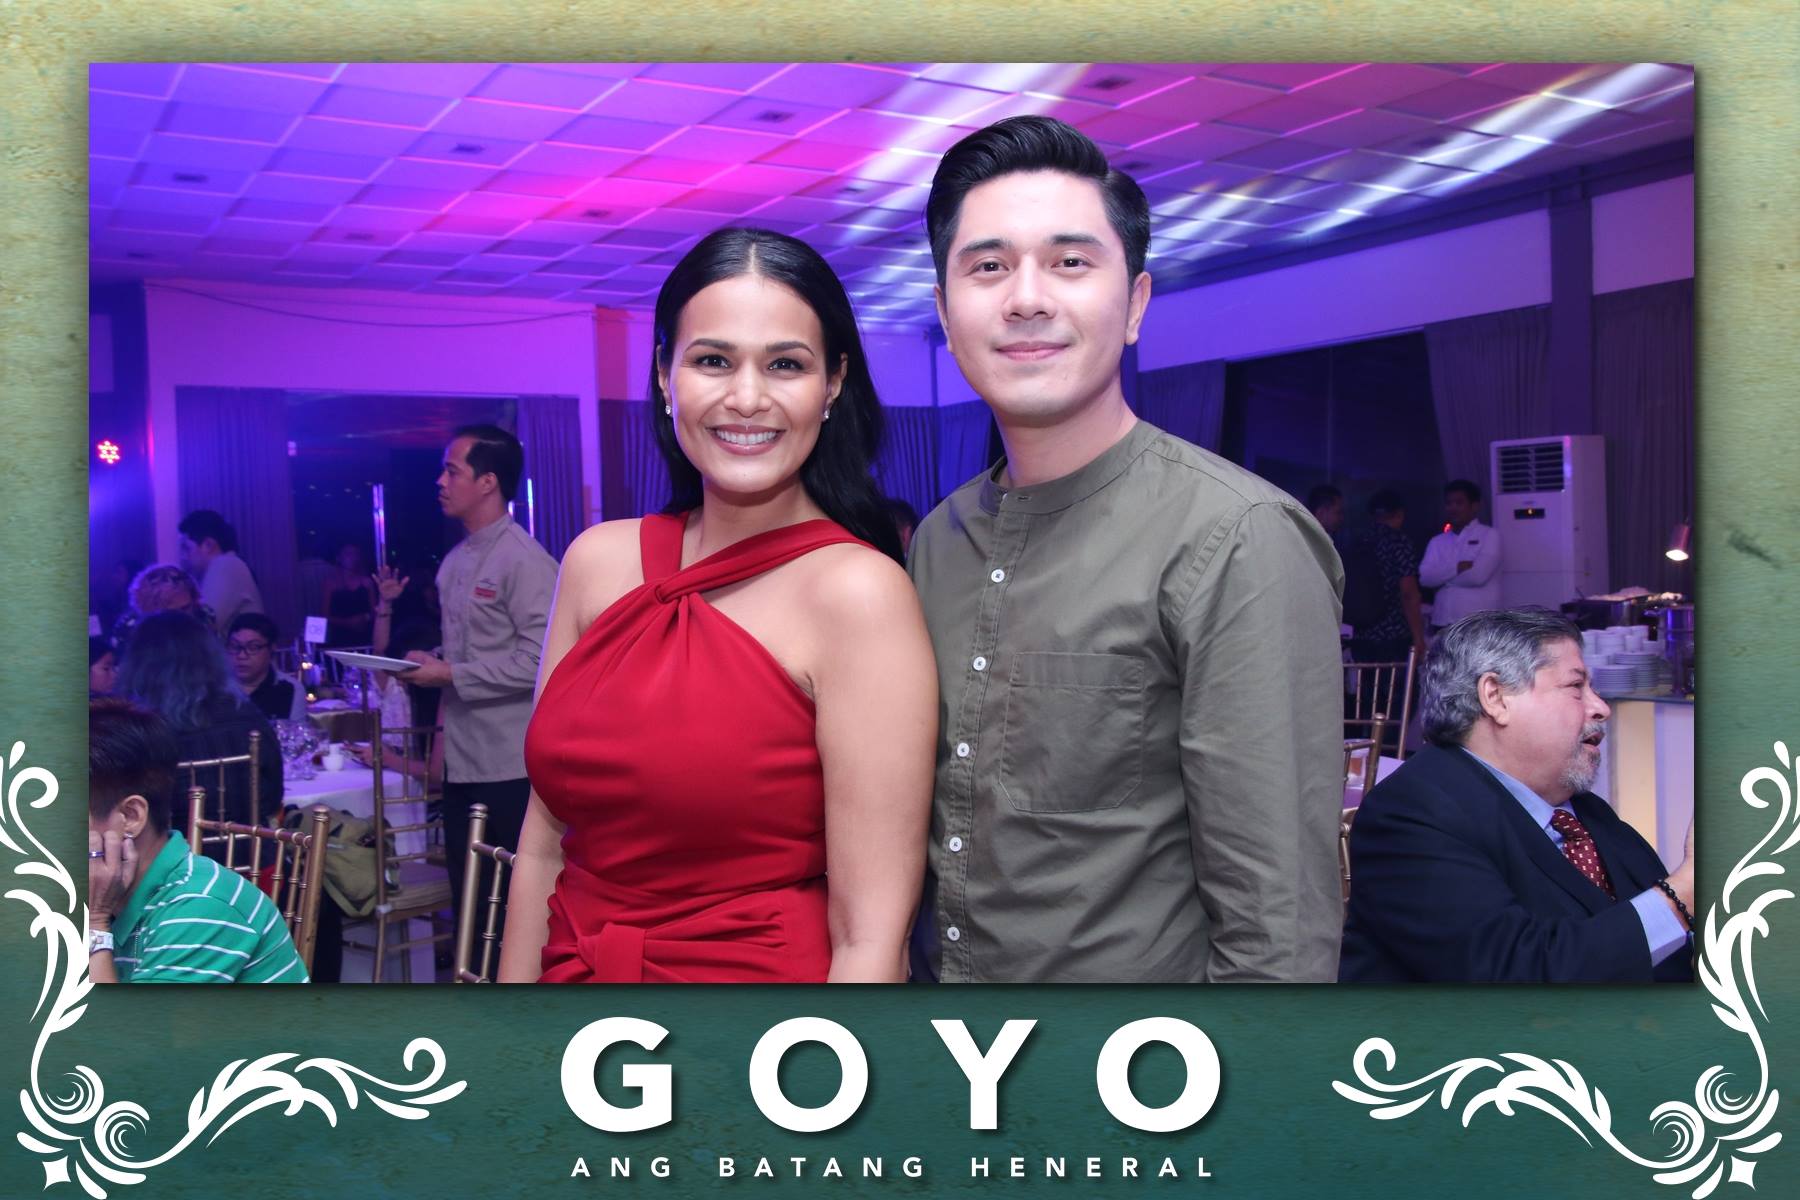 Goyo Ang Batang Heneral After Party – Photoman